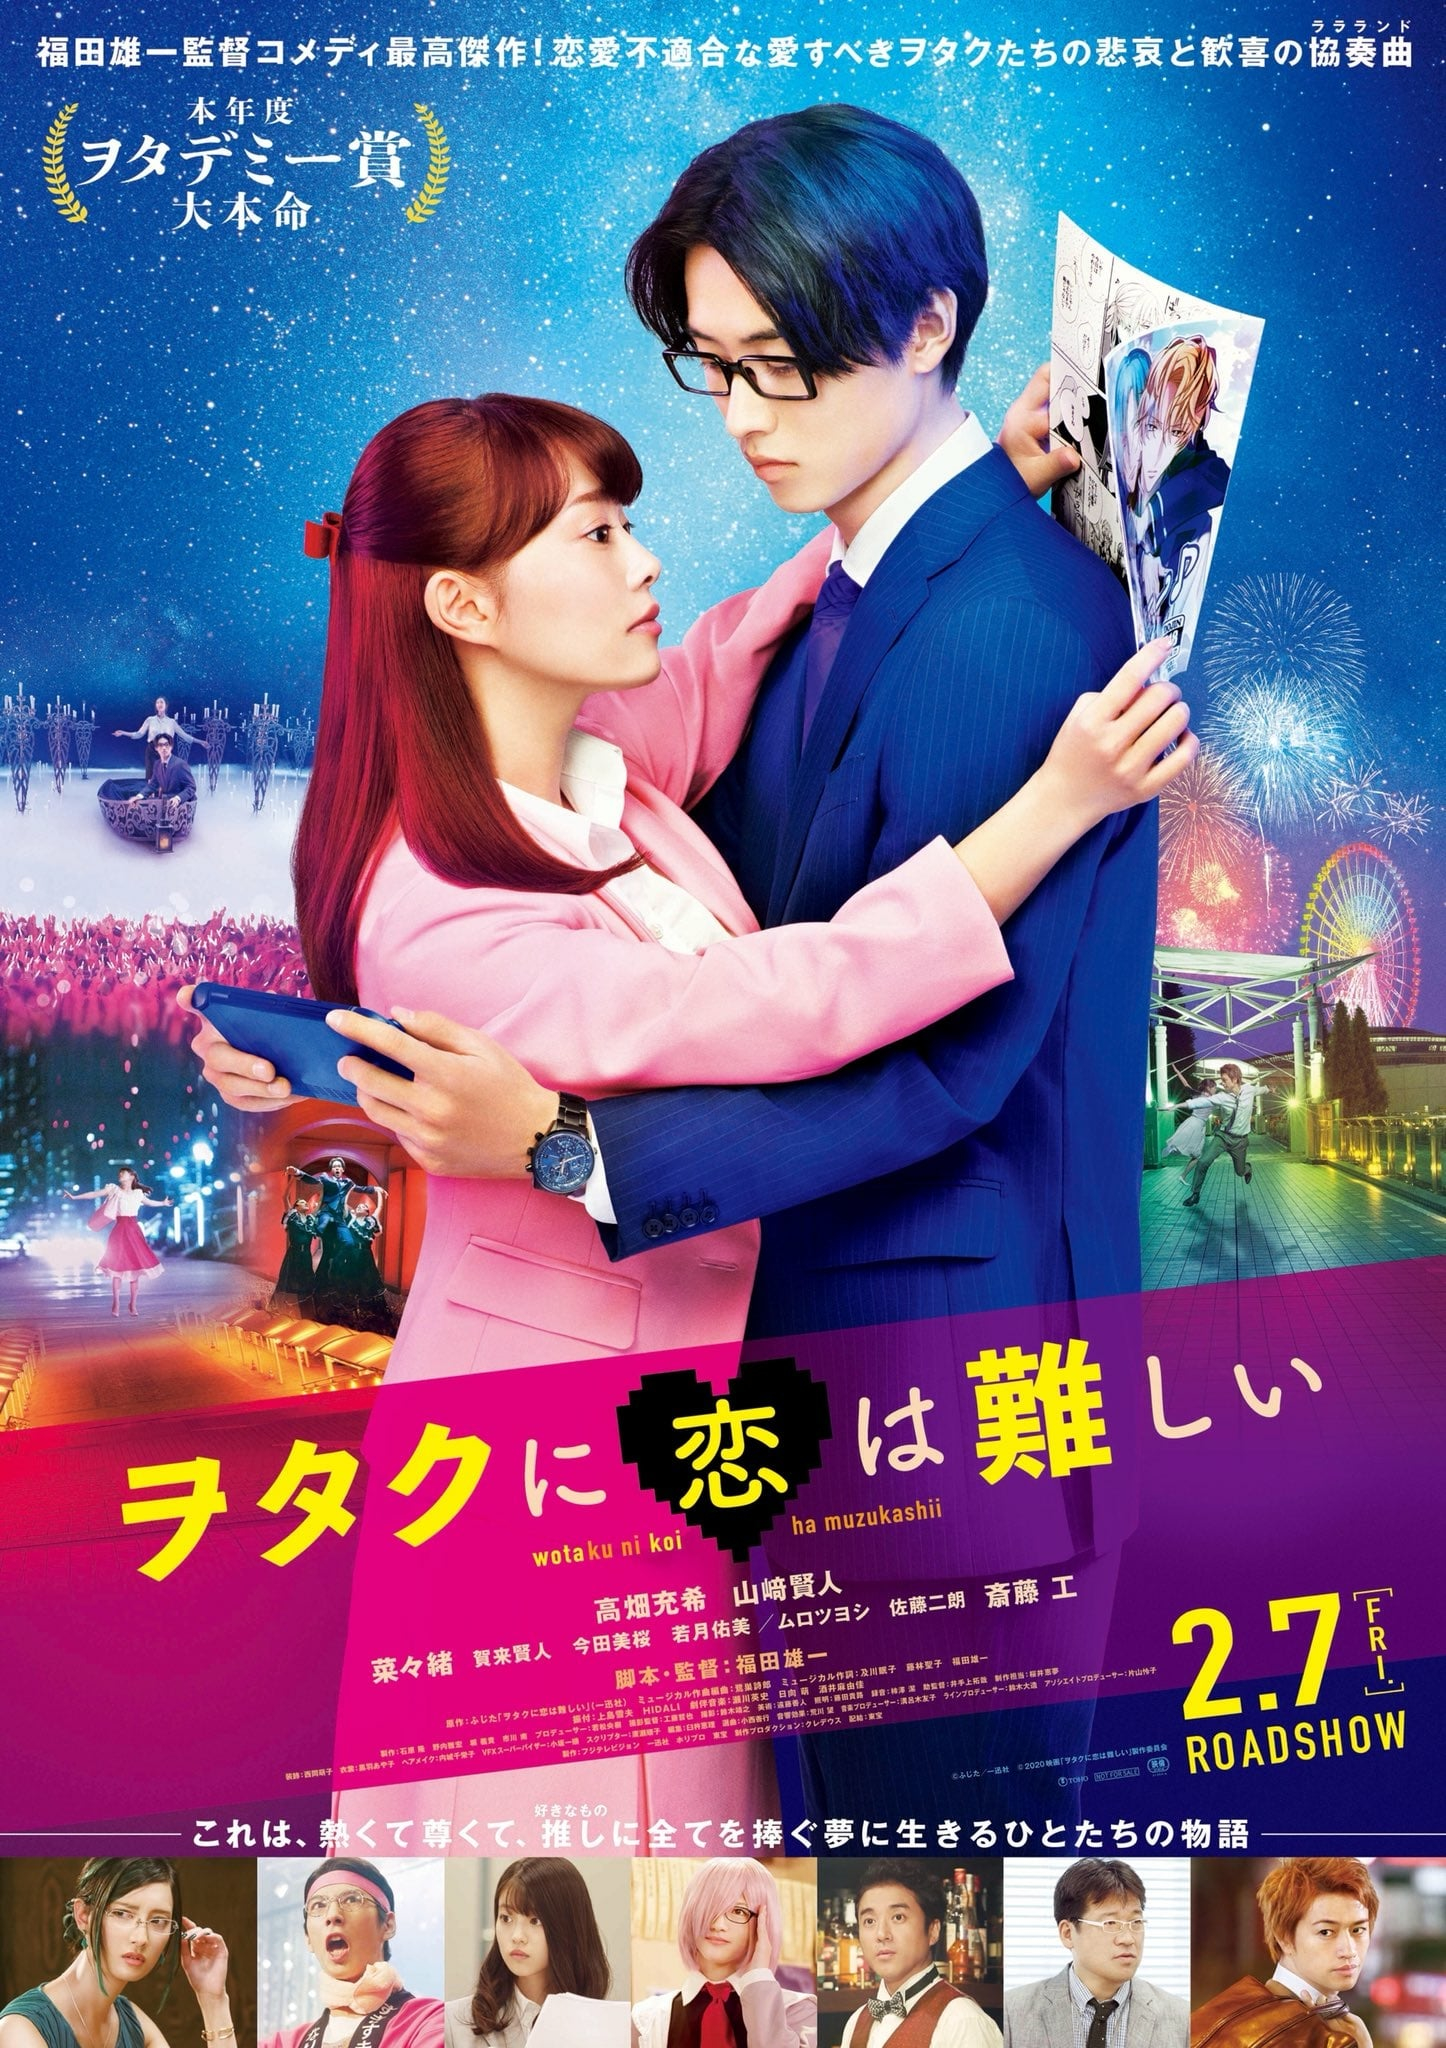 Wotaku ni Koi wa Muzukashii vai ter anime! Comédia romântica foca